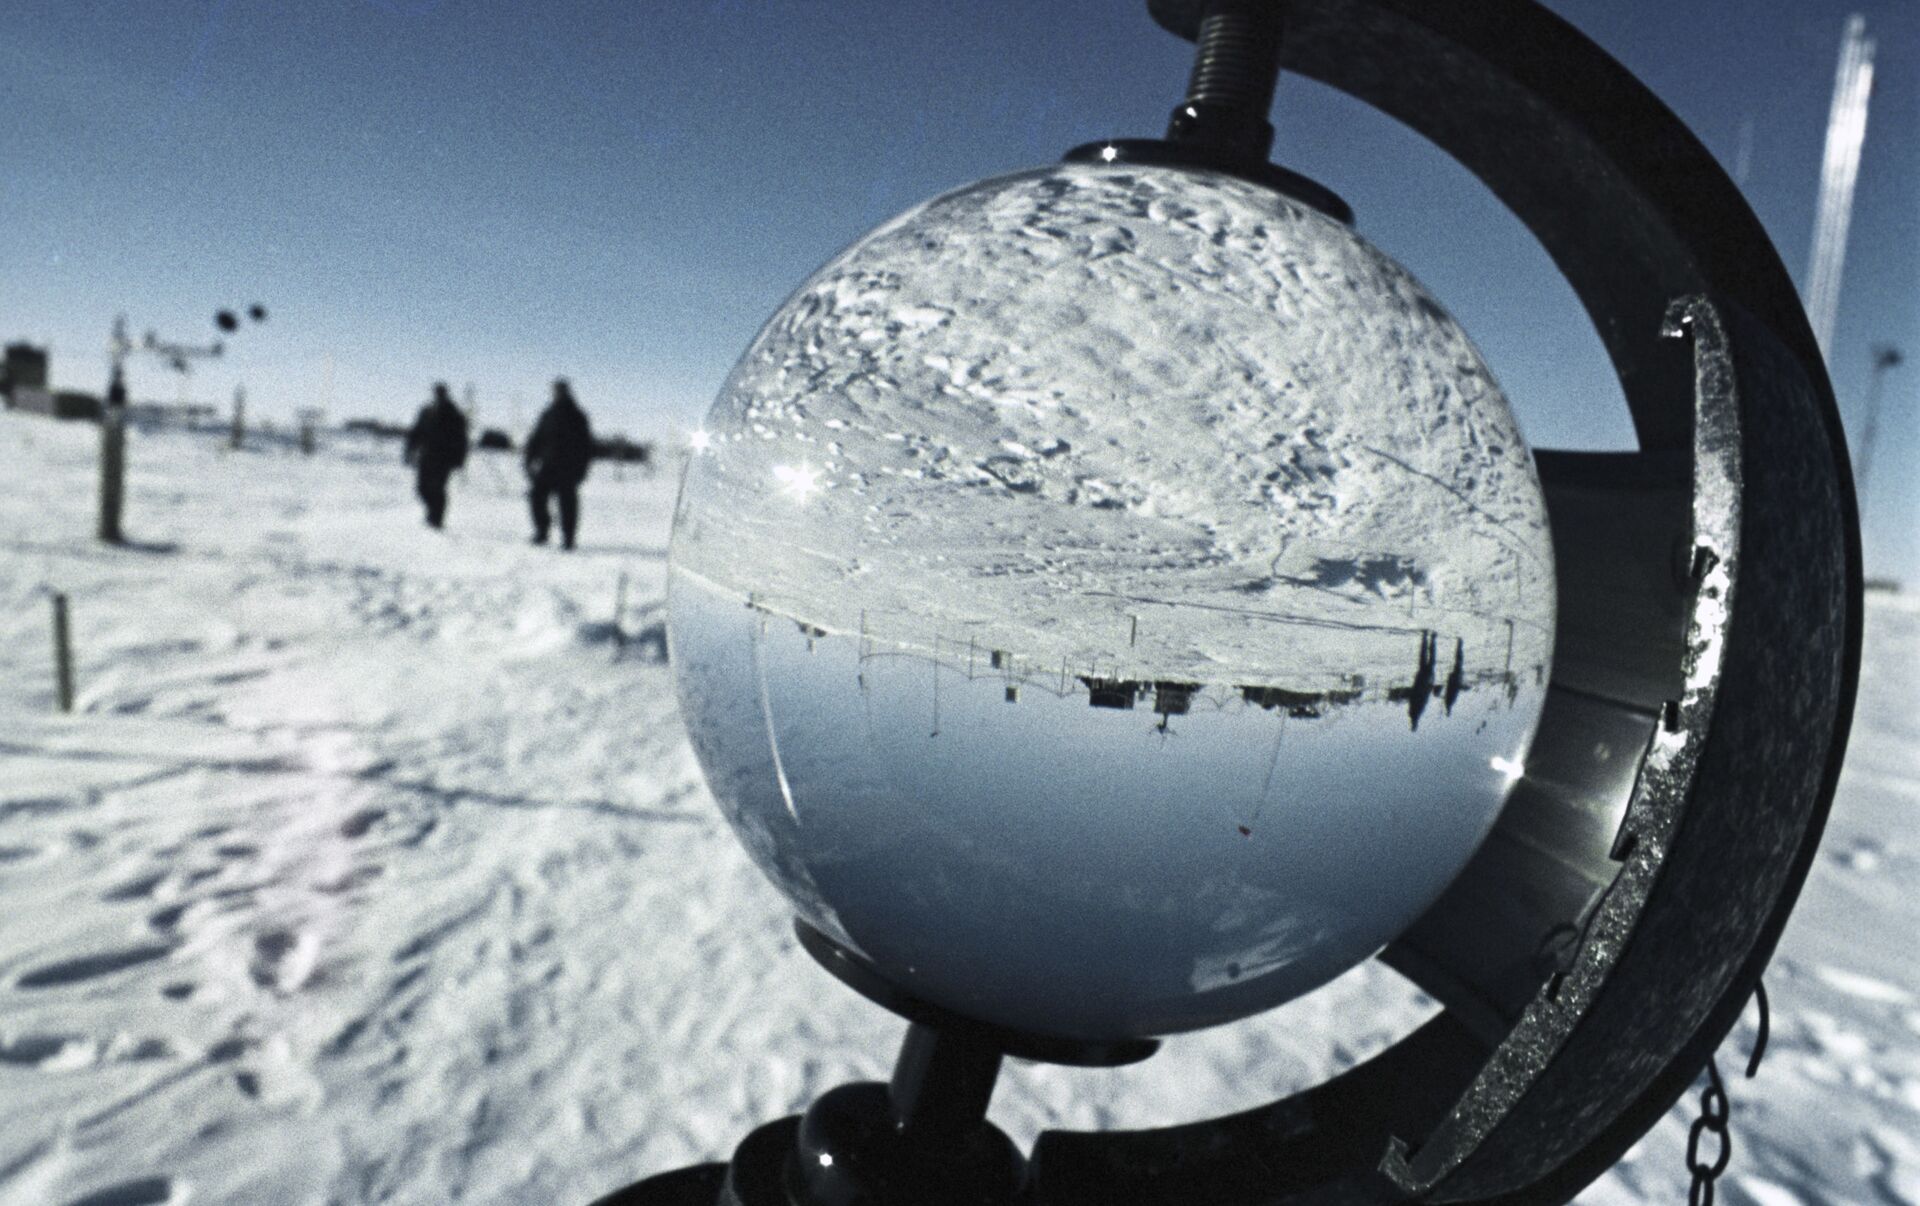 10000张卫星图像揭示南极半岛冰川活动加速发展的情况 - 科学探索 - cnBeta.COM